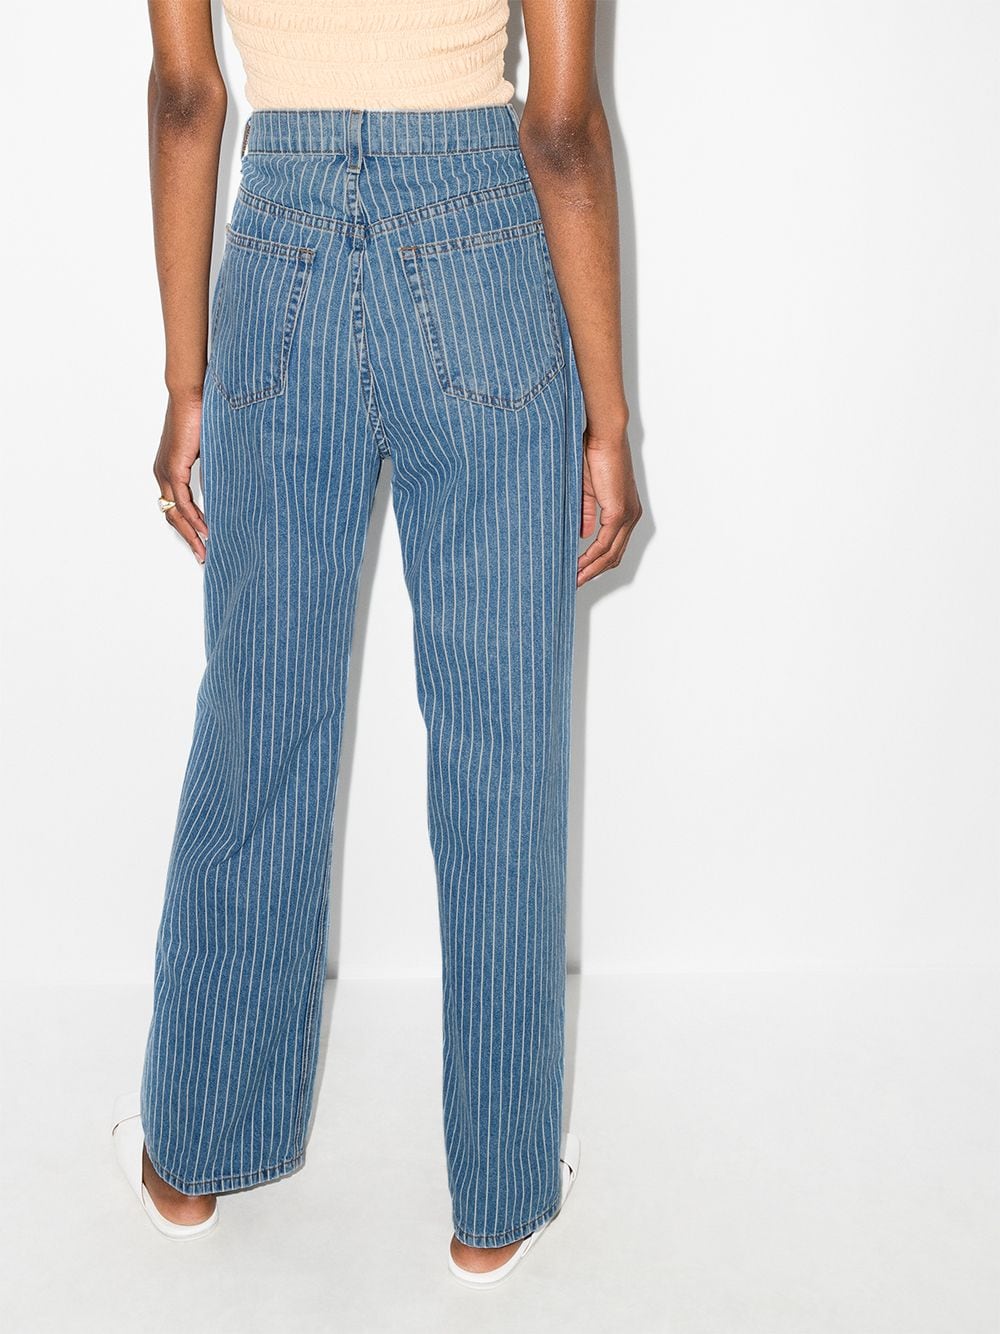 фото Reformation широкие джинсы hailey в тонкую полоску